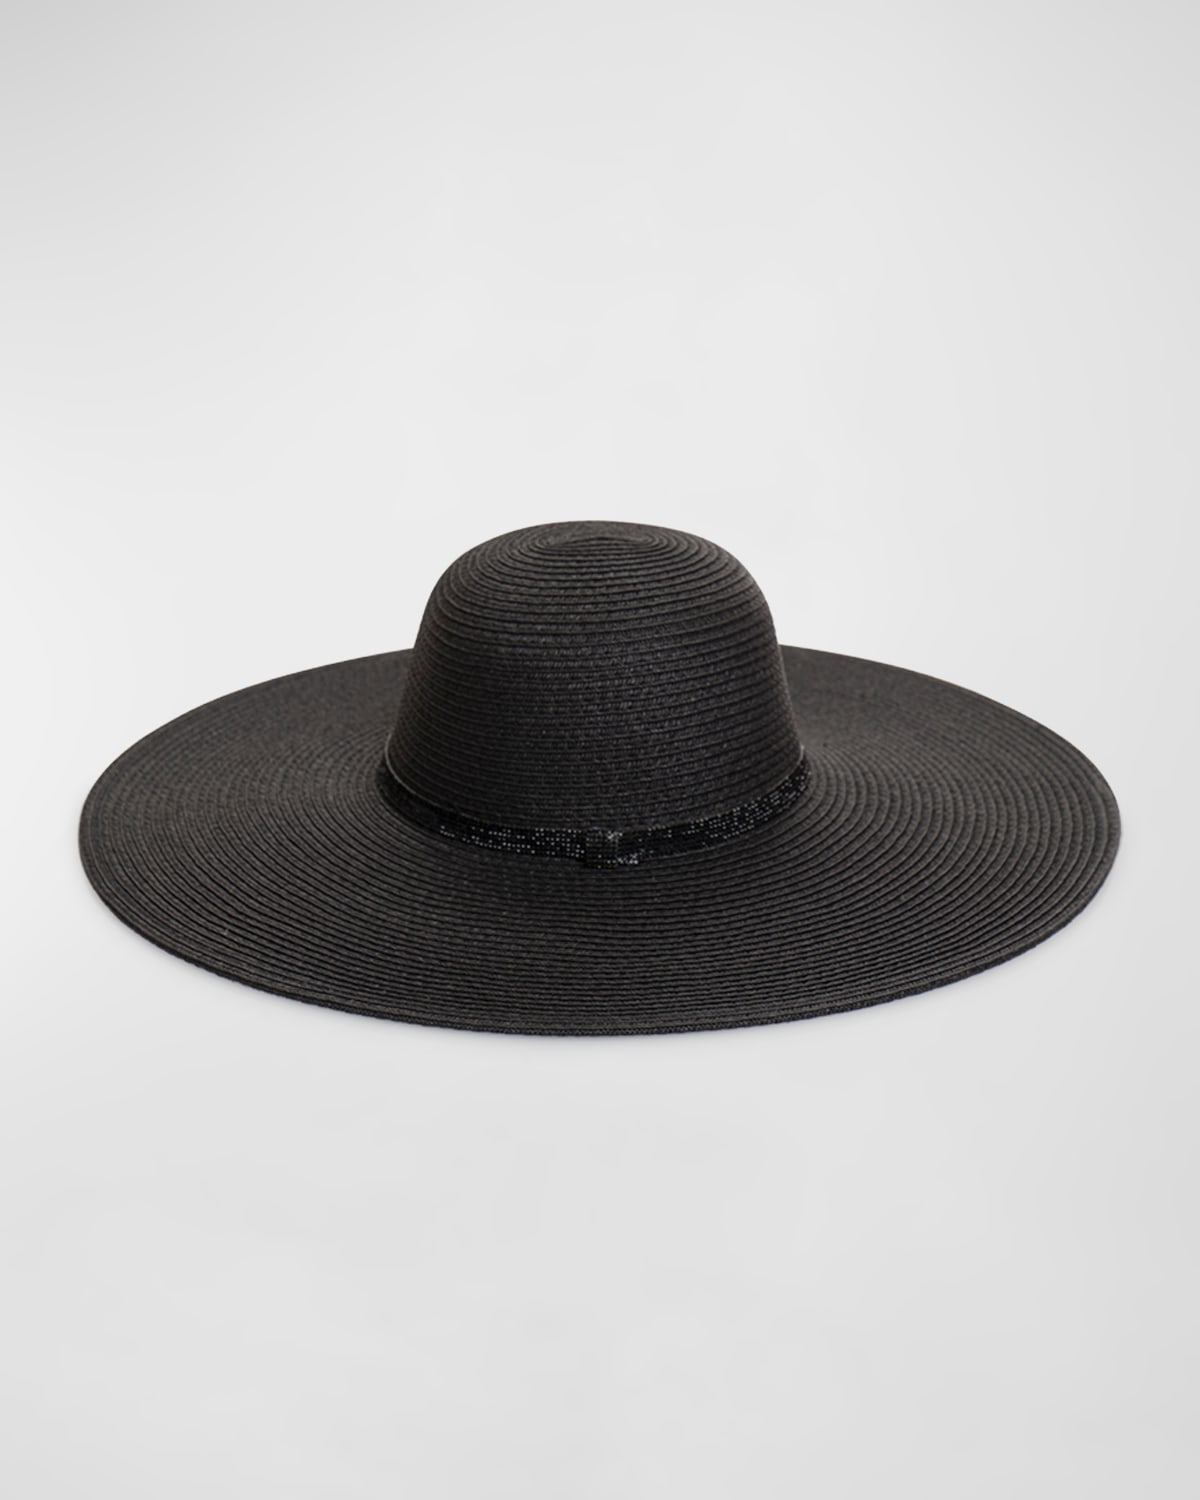 Romero Large Brim Hat